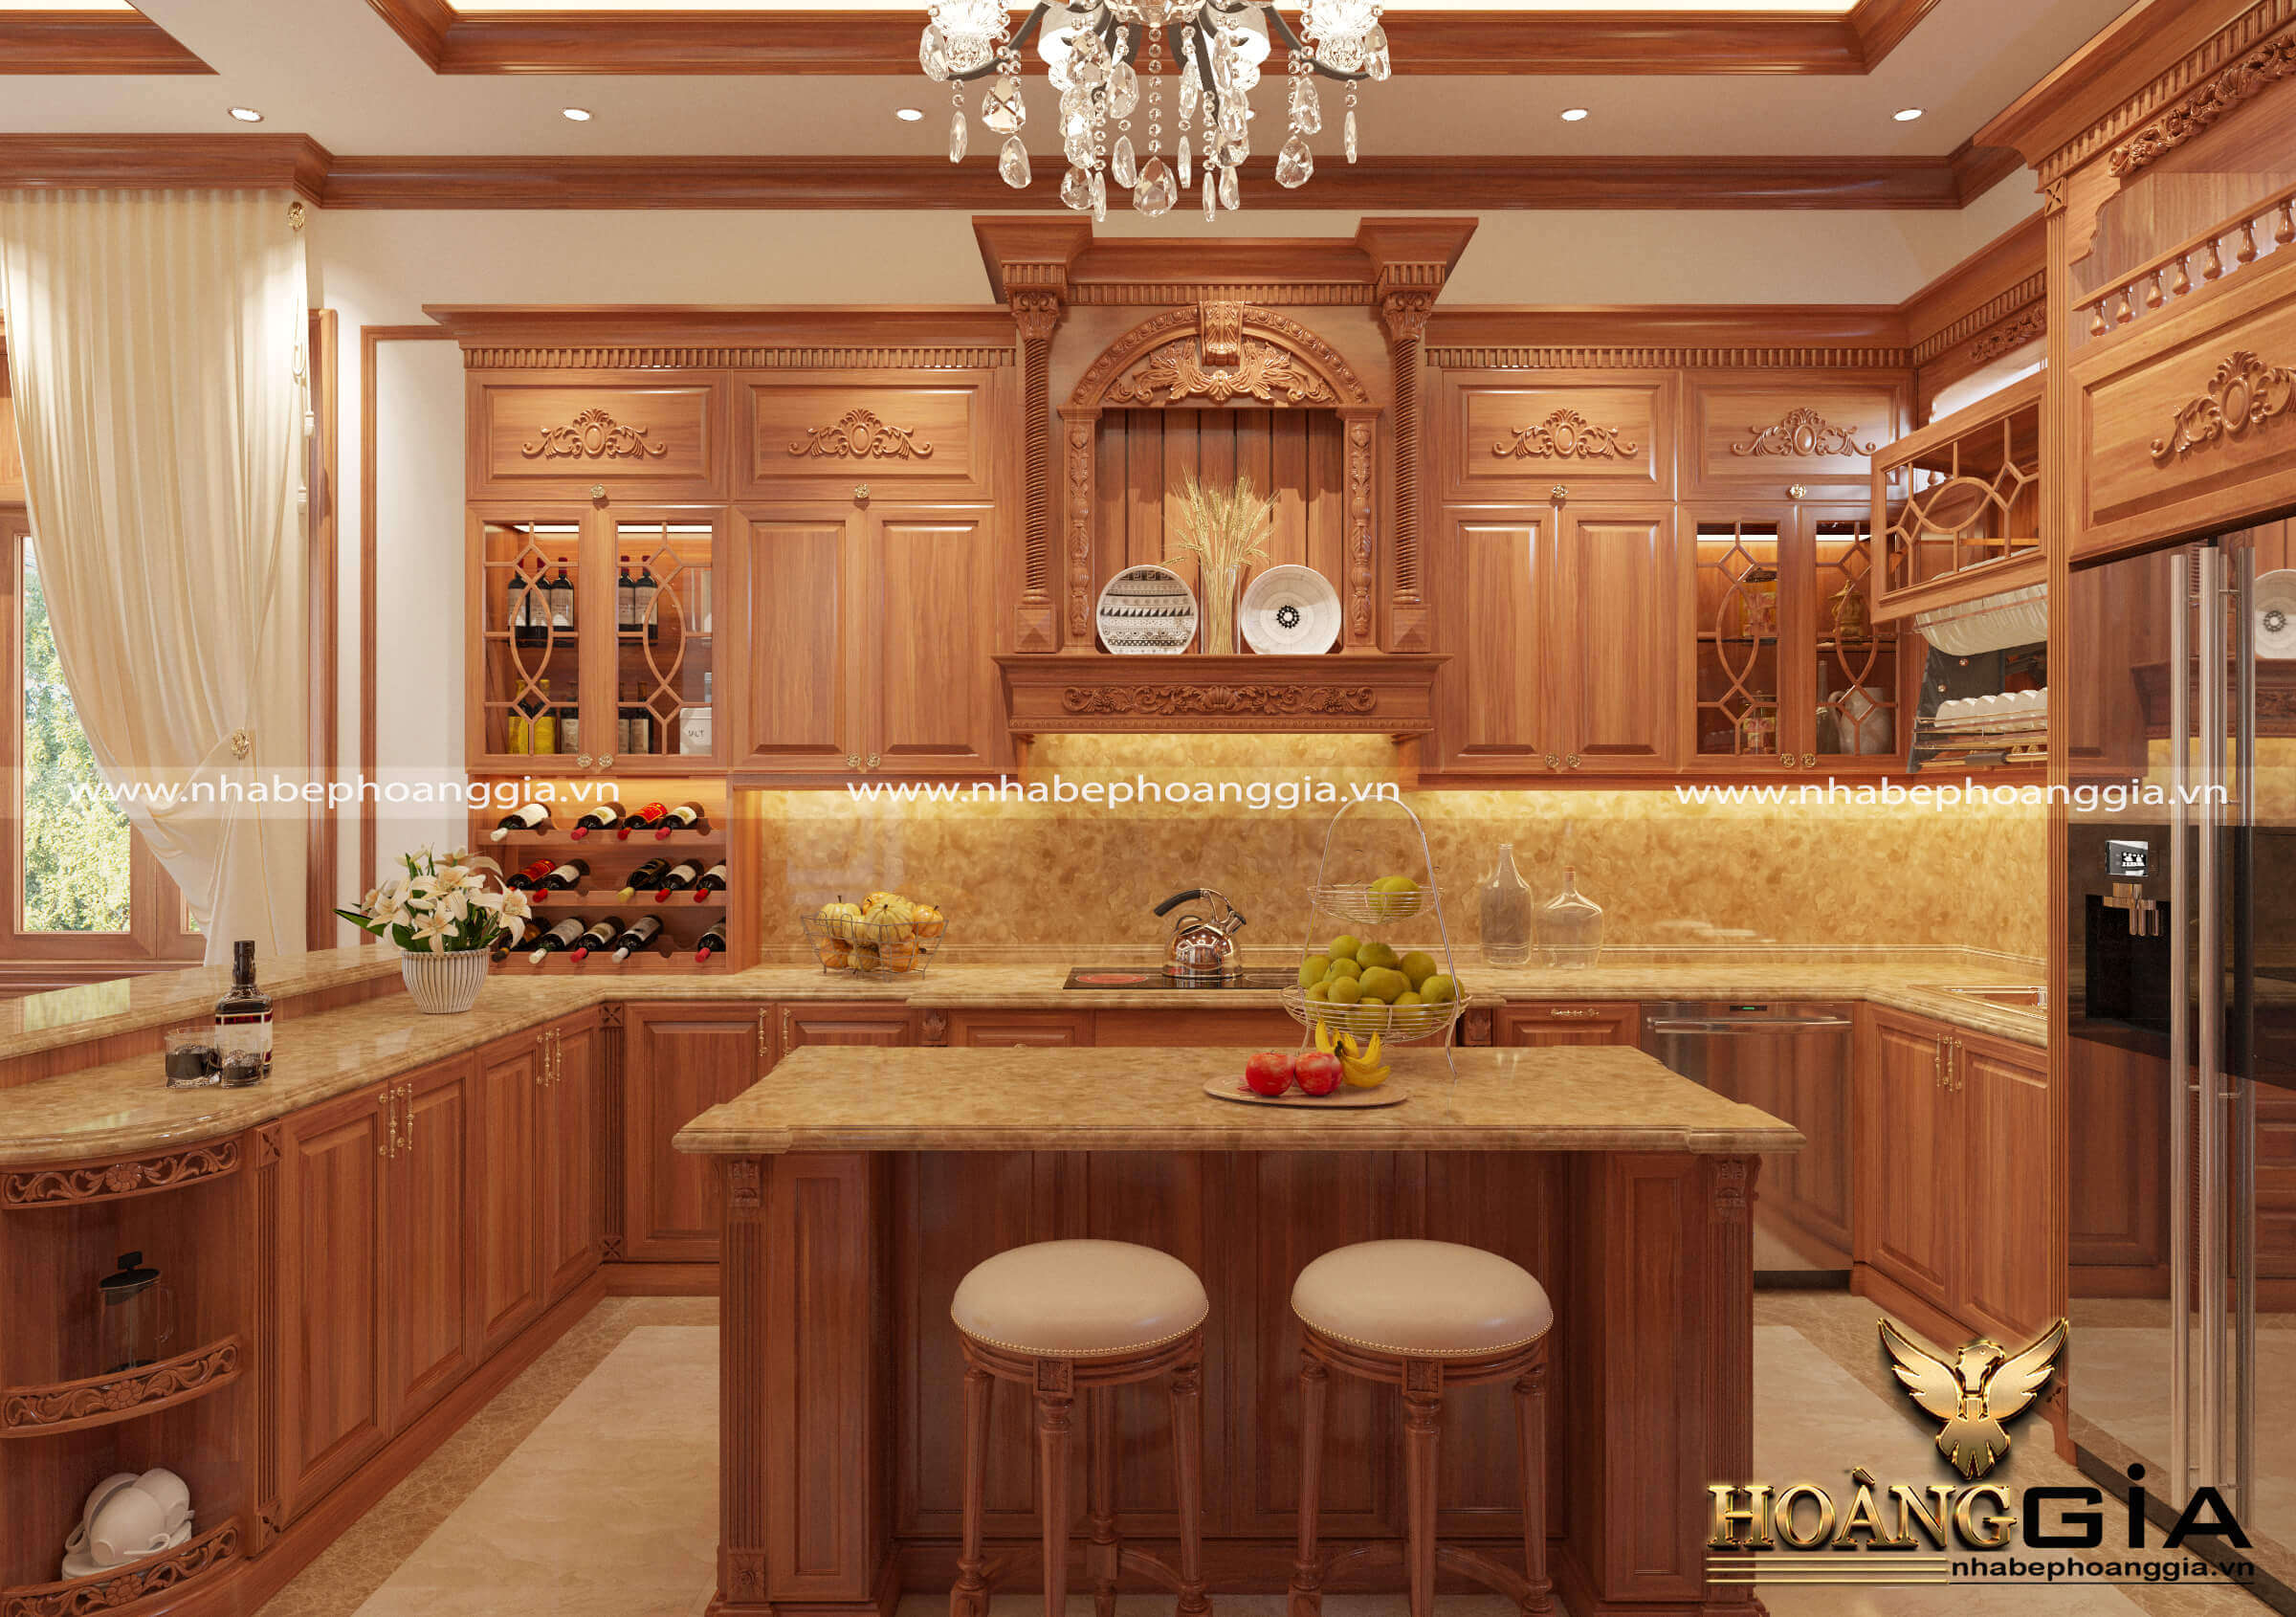 Thiết kế tủ bếp gỗ gõ đỏ - Thiết kế tủ bếp gỗ gõ đỏ mang đến cho không gian bếp của bạn sự độc đáo, tinh tế và sang trọng. Gỗ gõ đỏ thiên nhiên với hình dạng độc đáo và vân gỗ tuyệt đẹp, tạo nên một sản phẩm độc đáo và ấn tượng. Hãy để căn bếp của bạn trở nên đẳng cấp hơn với thiết kế tủ bếp gỗ gõ đỏ đầy uy lực và mạnh mẽ.